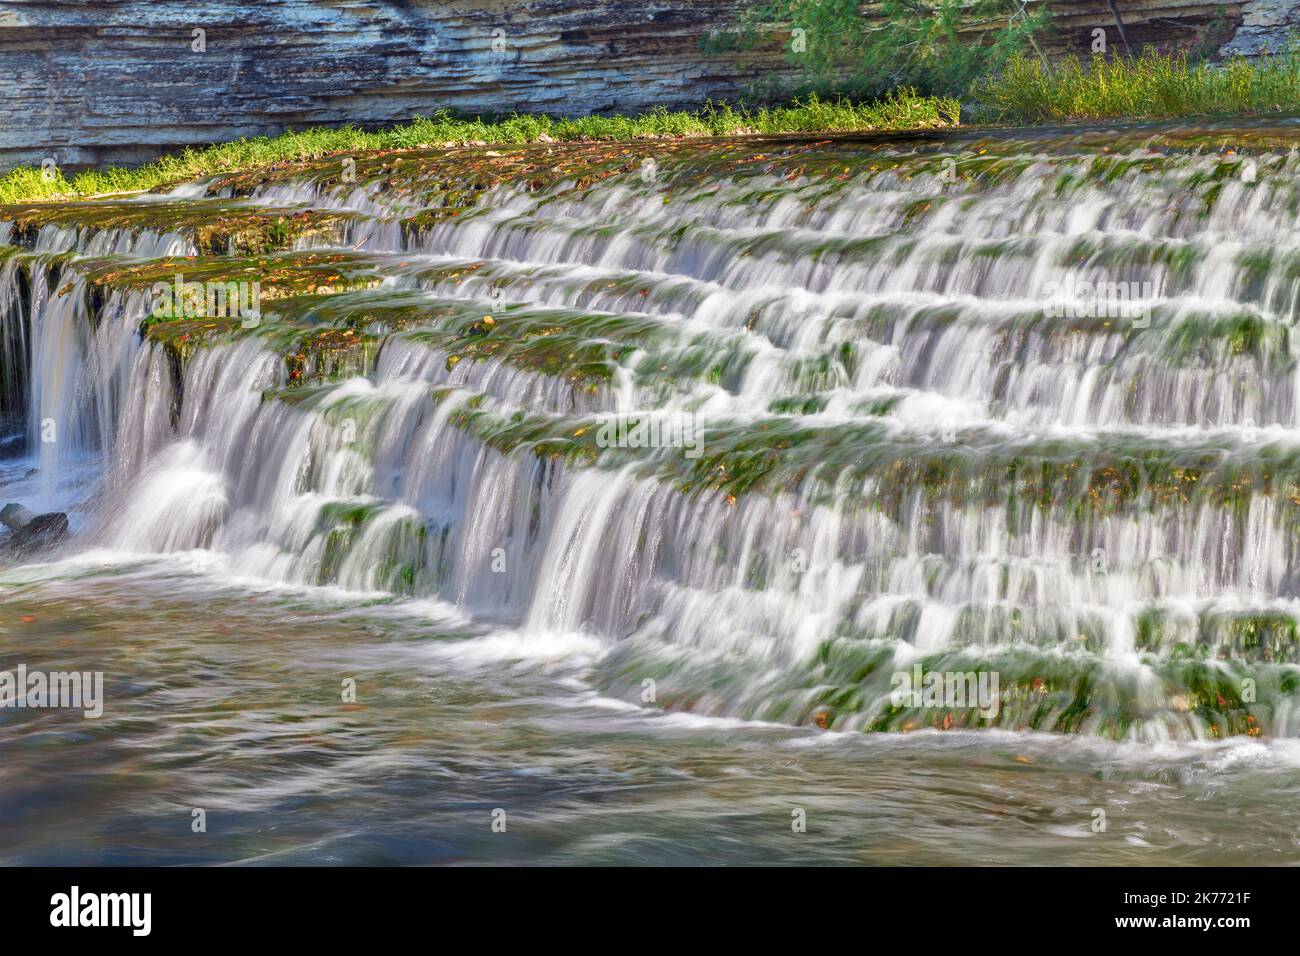 Une chute d'eau à gradins incroyablement belle prise de vue avec une vitesse d'obturation lente pour capturer le mouvement coule le long de la rivière vers une plus grande cascade dans les Burges du Tennessee Banque D'Images